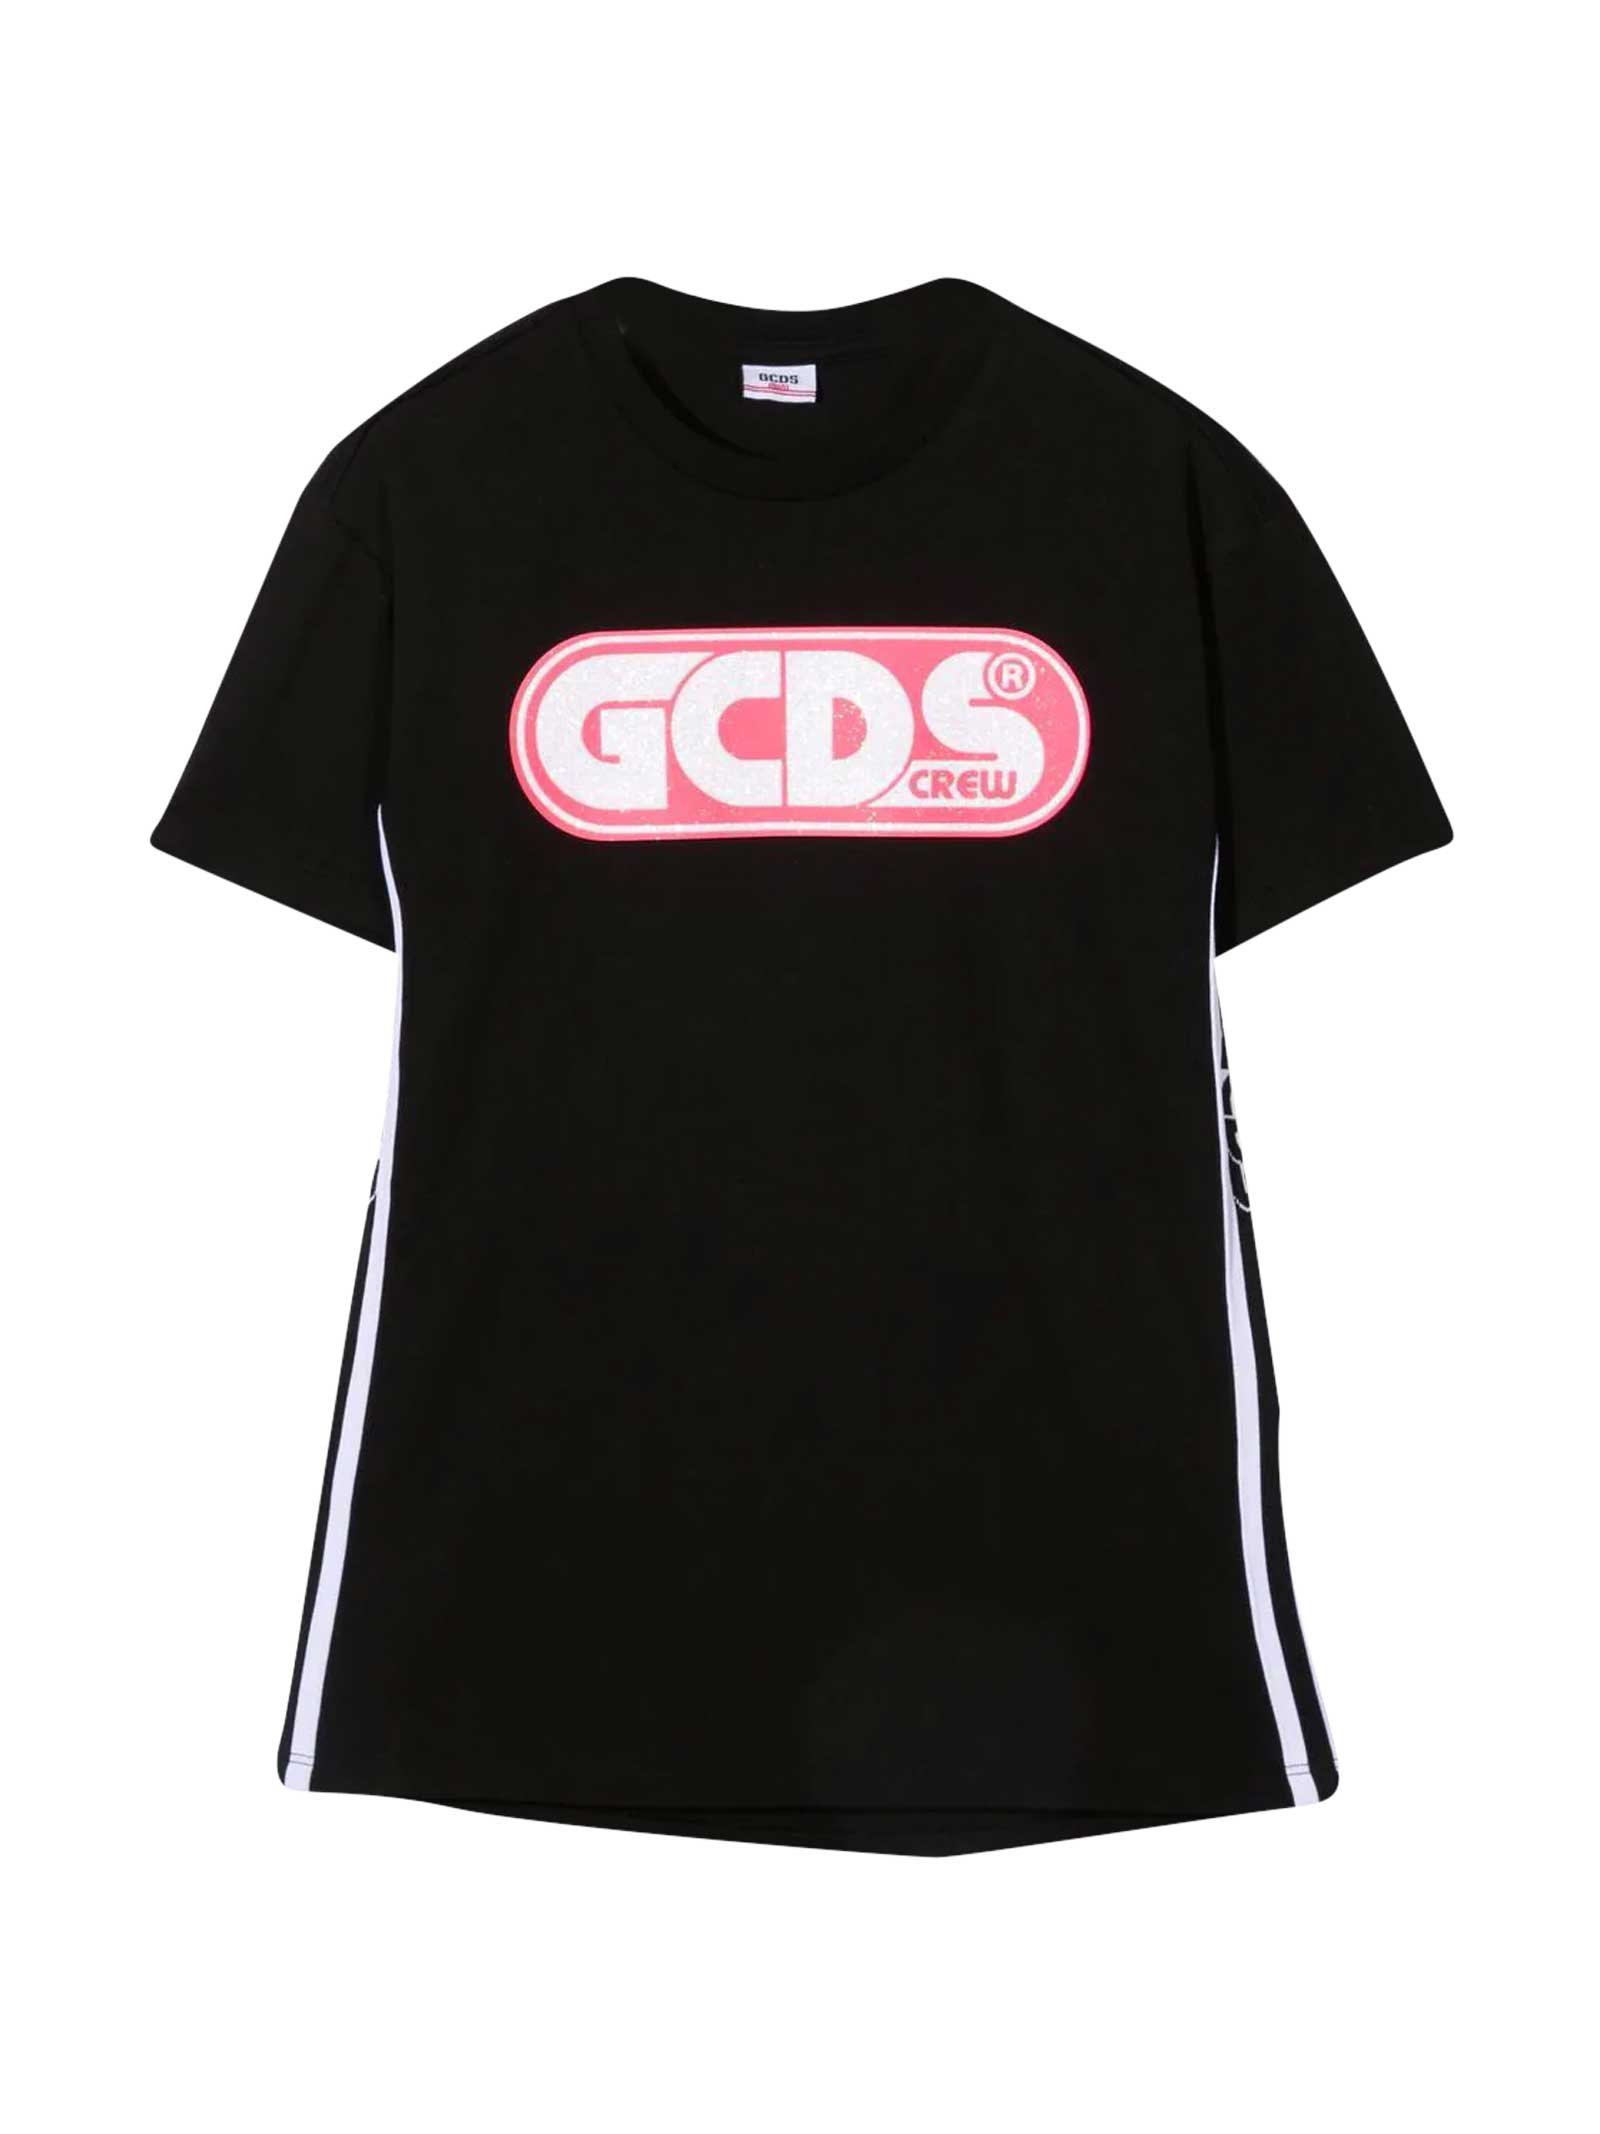 GCDS Mini Black T-shirt Dress